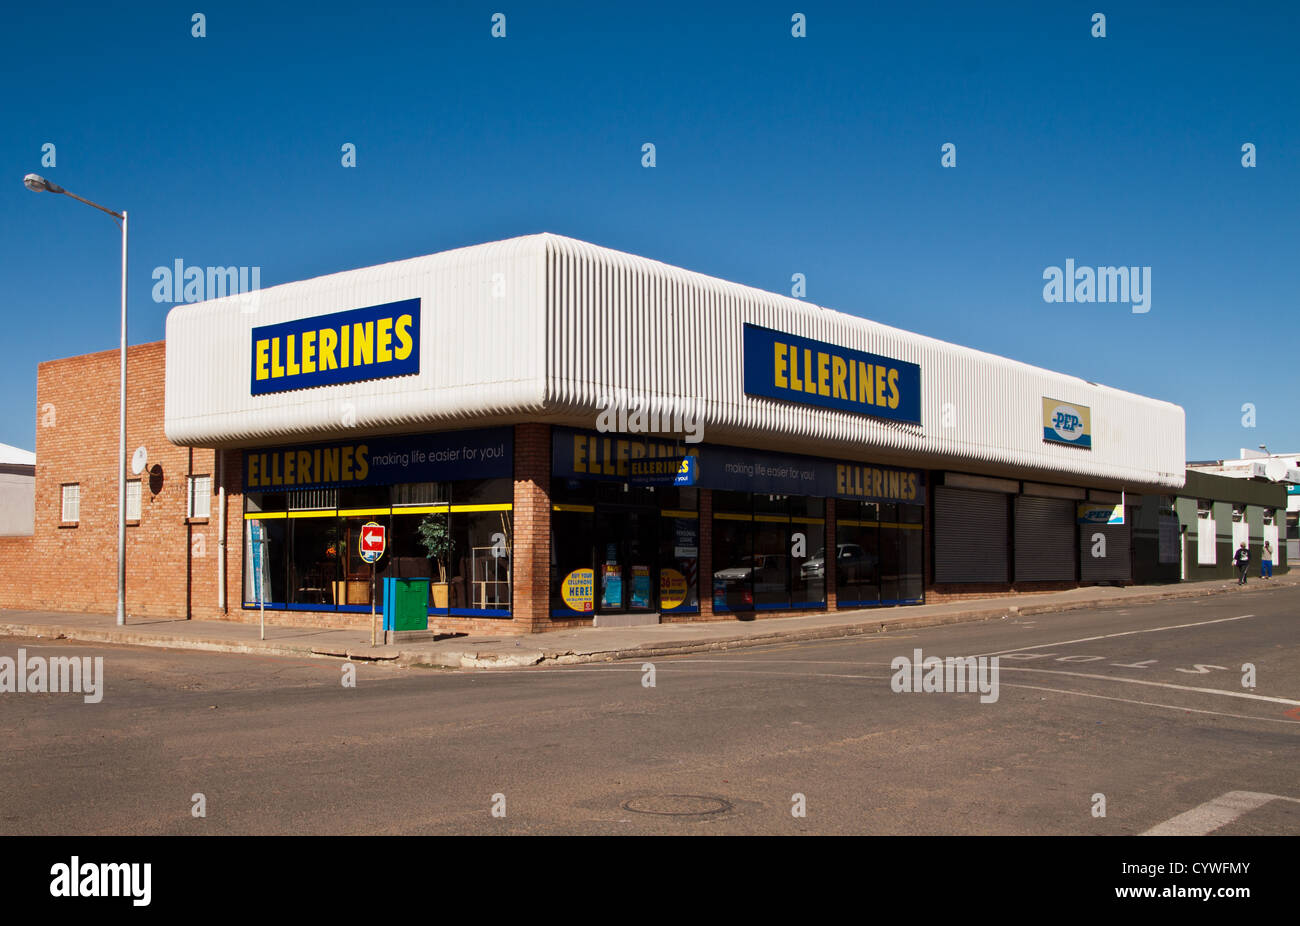 Ellerines and PEP stores in Prieska Stock Photo